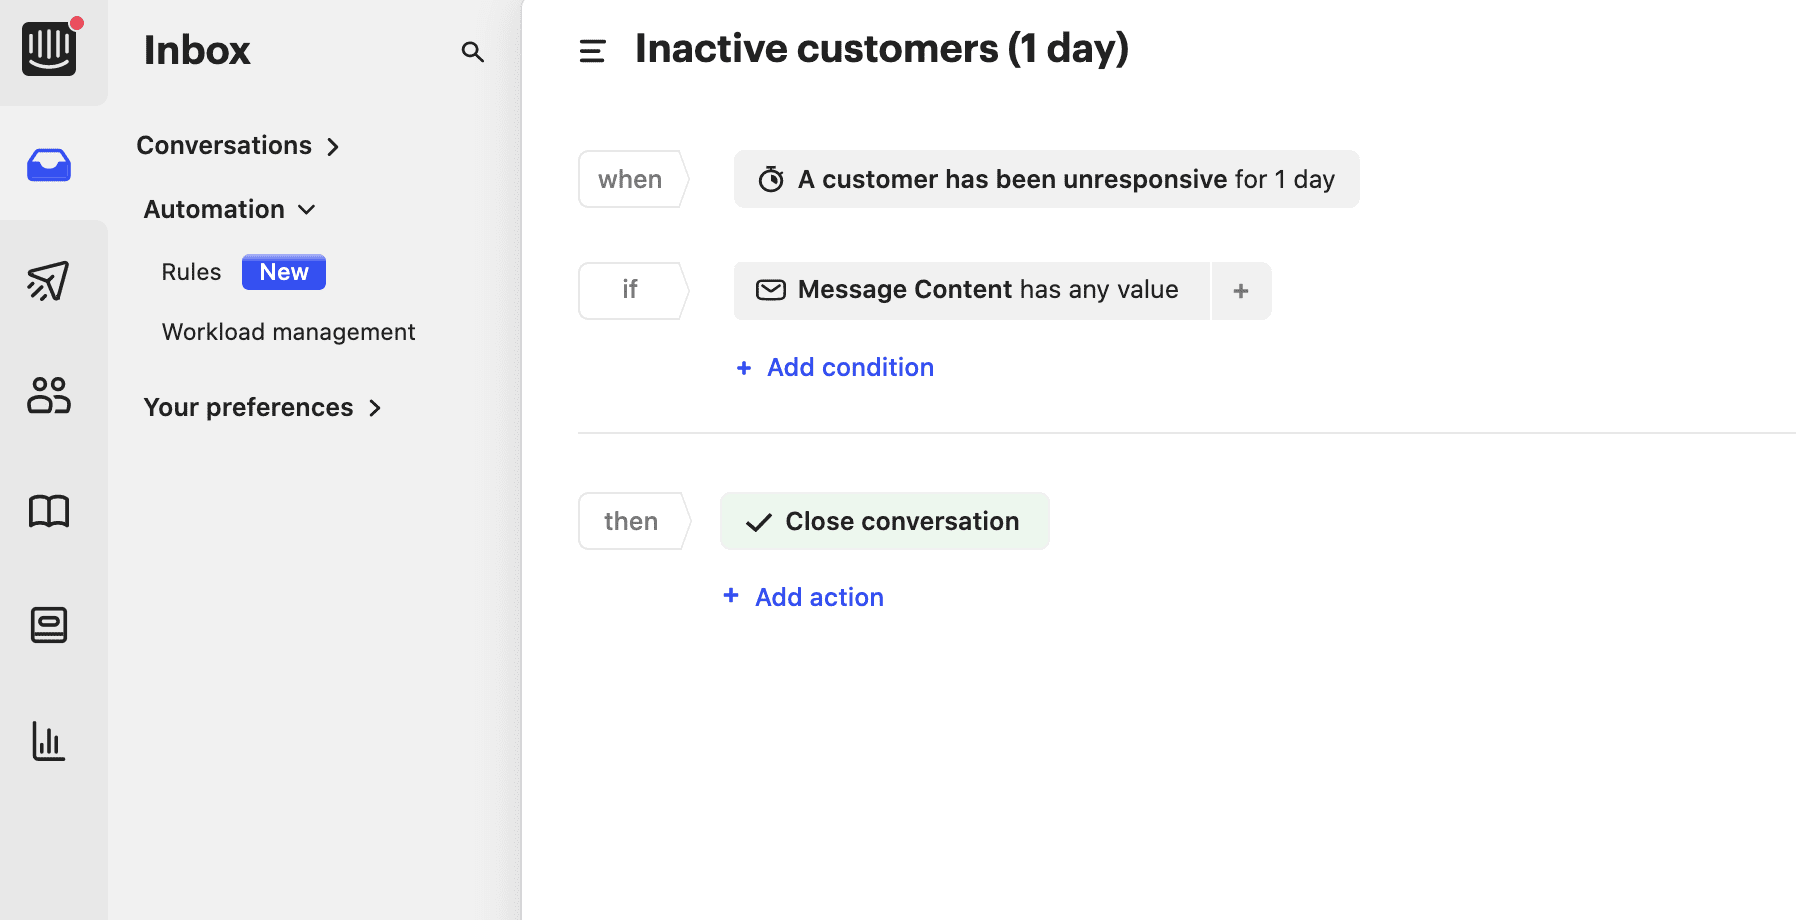 Inactive customers